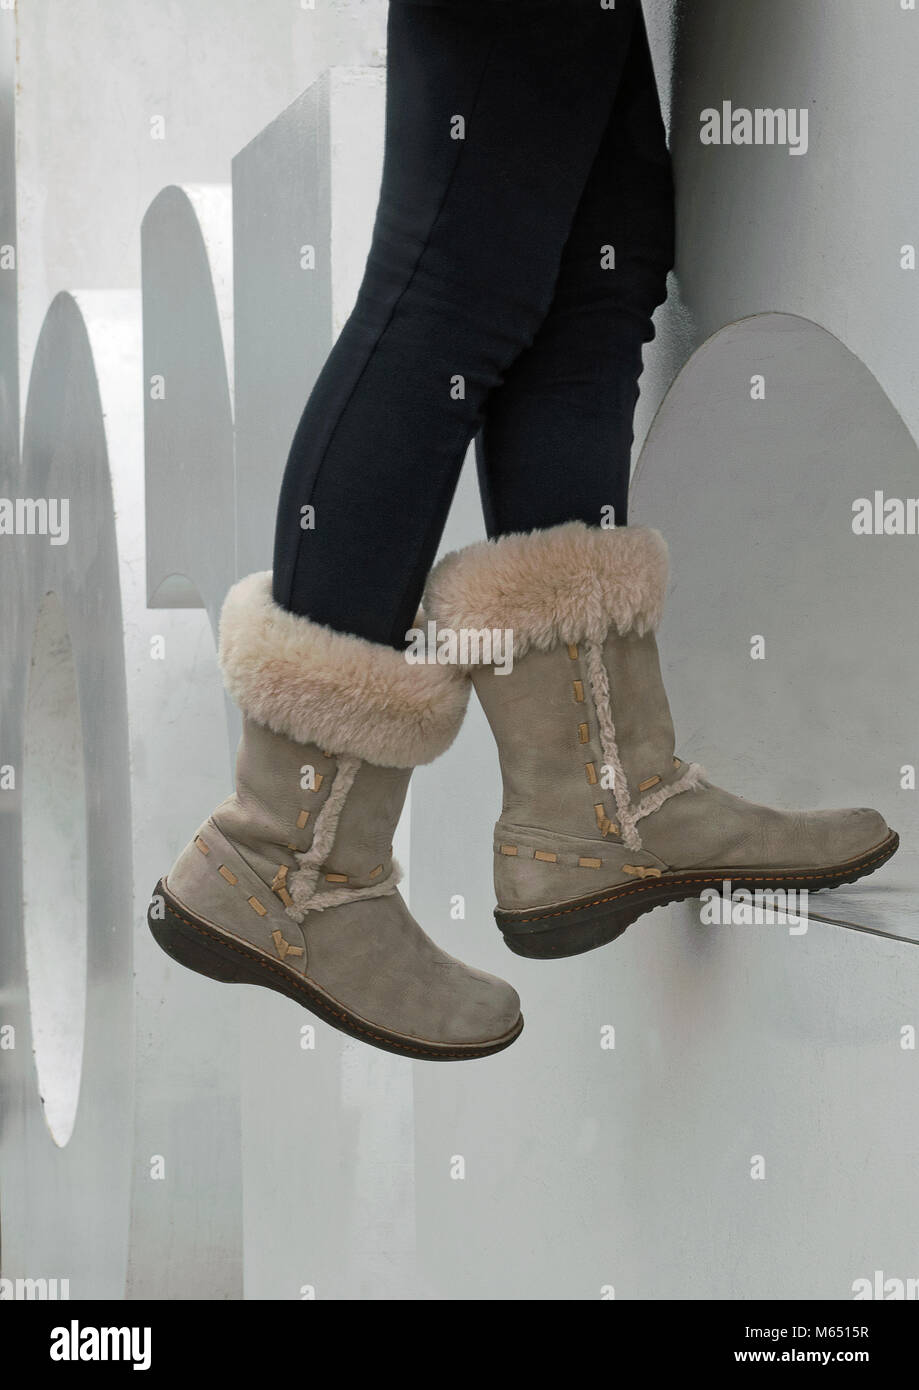 Ugg boots girl -Fotos und -Bildmaterial in hoher Auflösung – Alamy